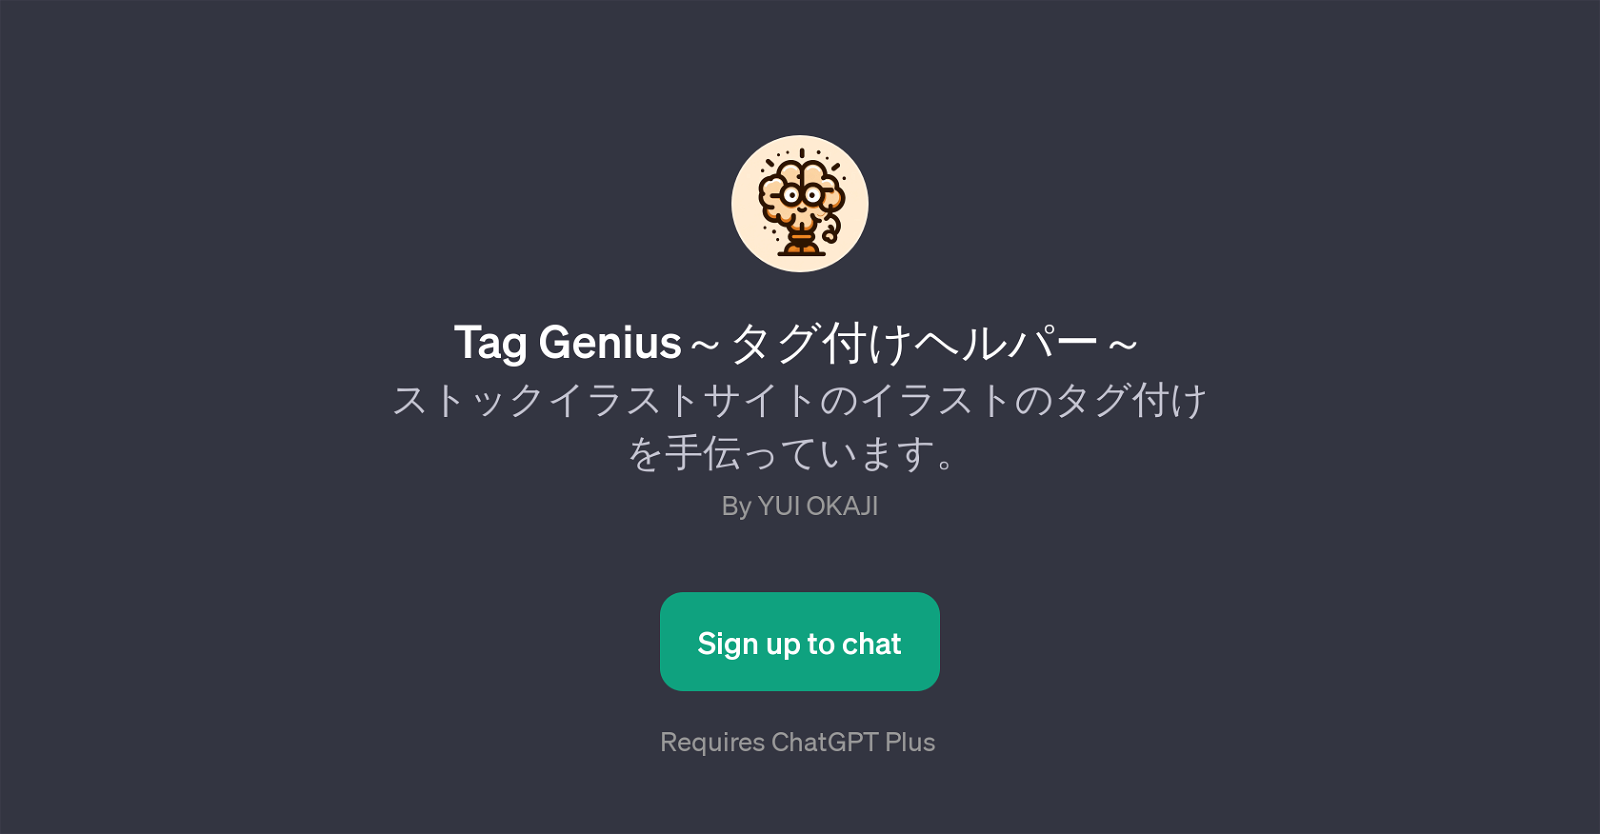 Tag Genius website